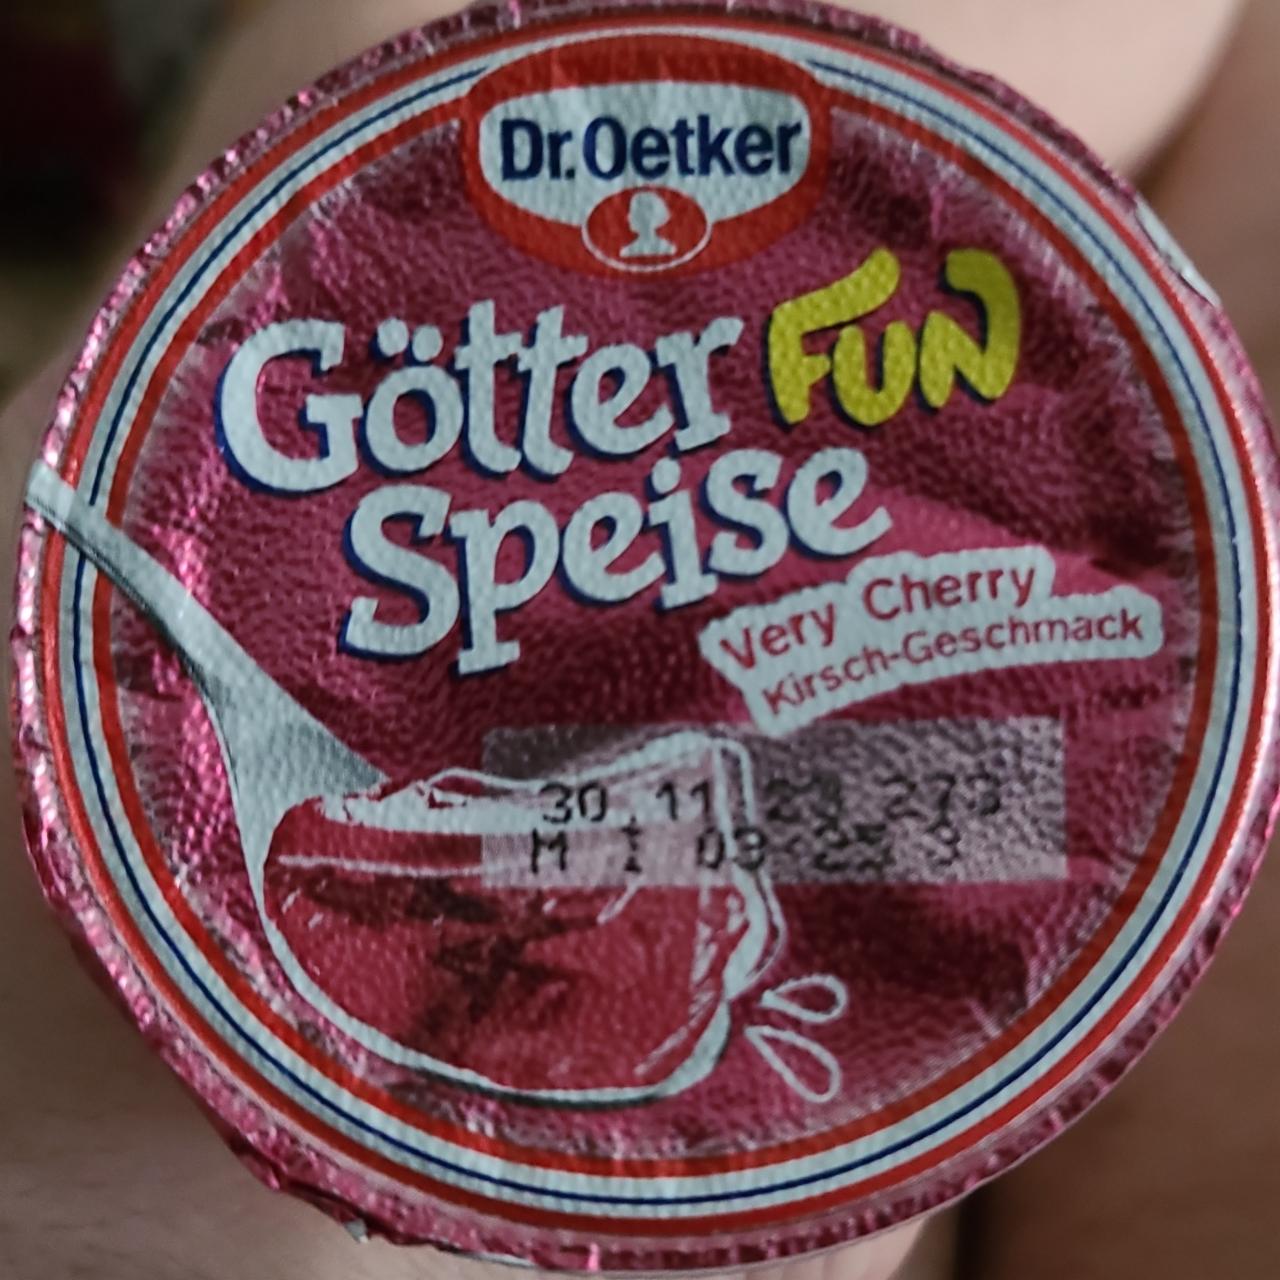 Fotografie - Götter fun Speise Very Cherry Dr.Oetker